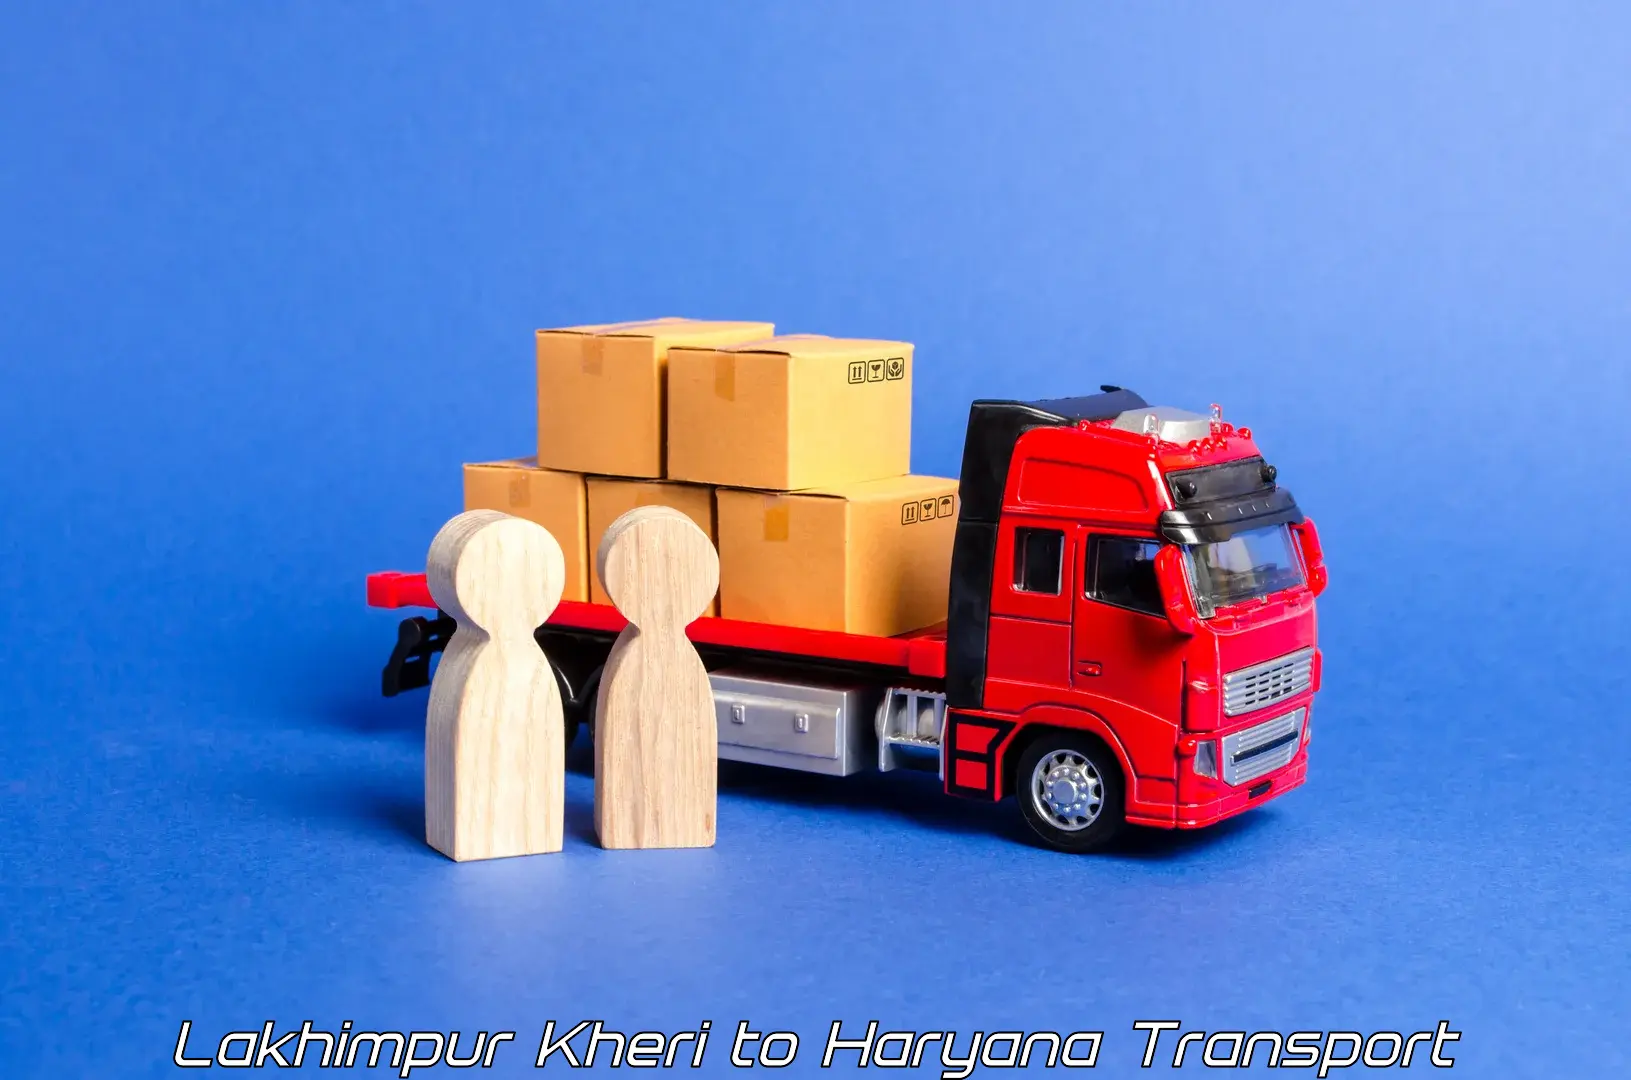 Furniture transport service Lakhimpur Kheri to Haryana